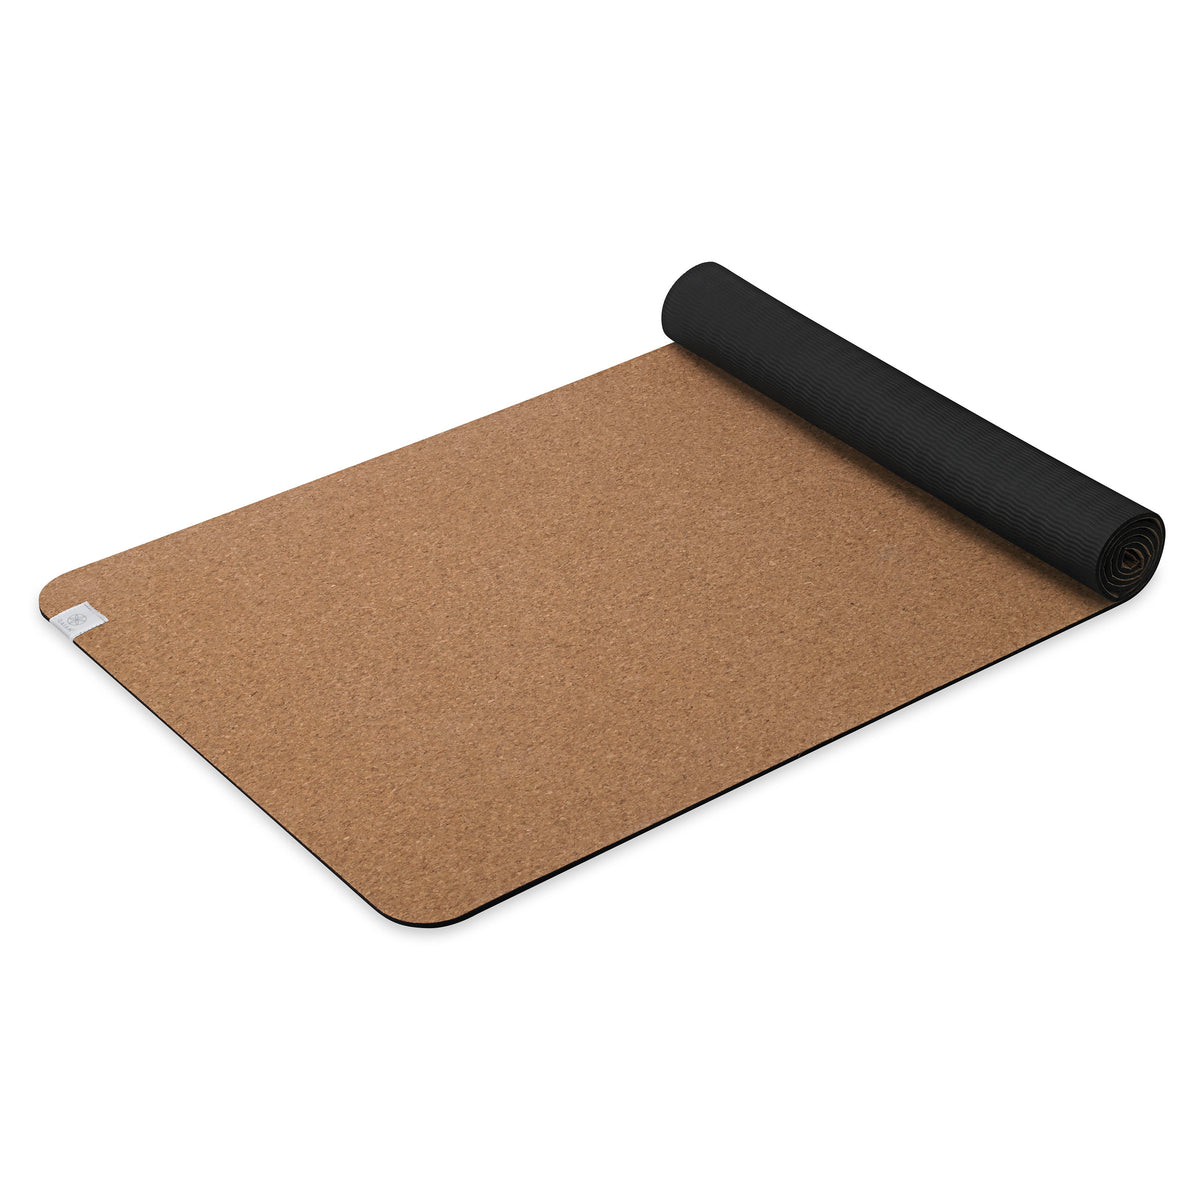 Gaiam Yoga Mat - Premium 5mm Dry-Grip Extra Long Thick Non Slip